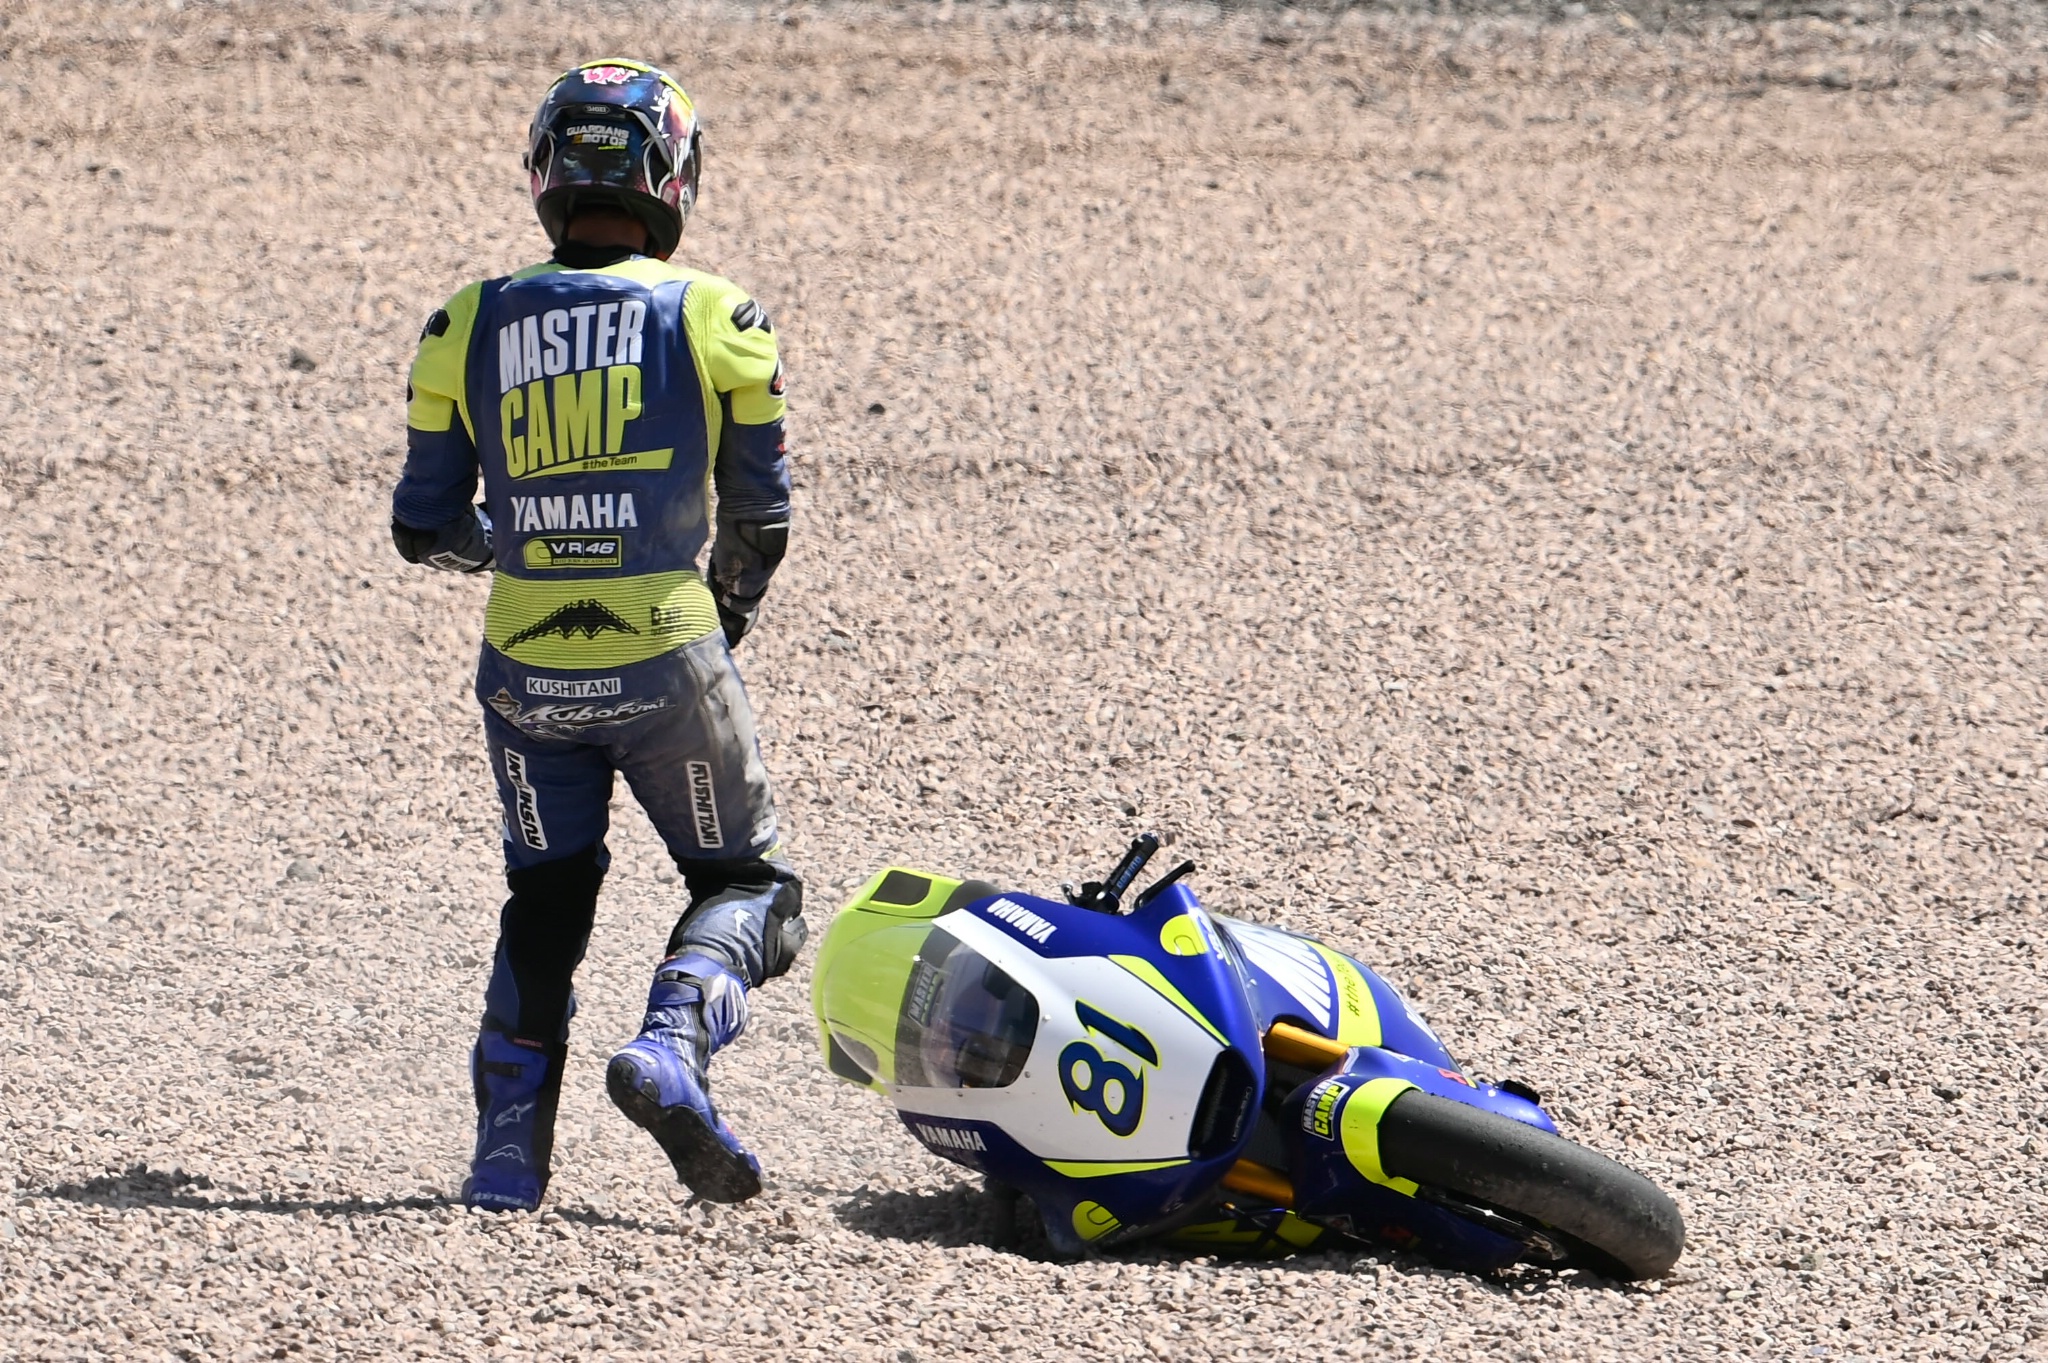 Keminth Kubo crash, Moto2 race, German MotoGP, 19 June